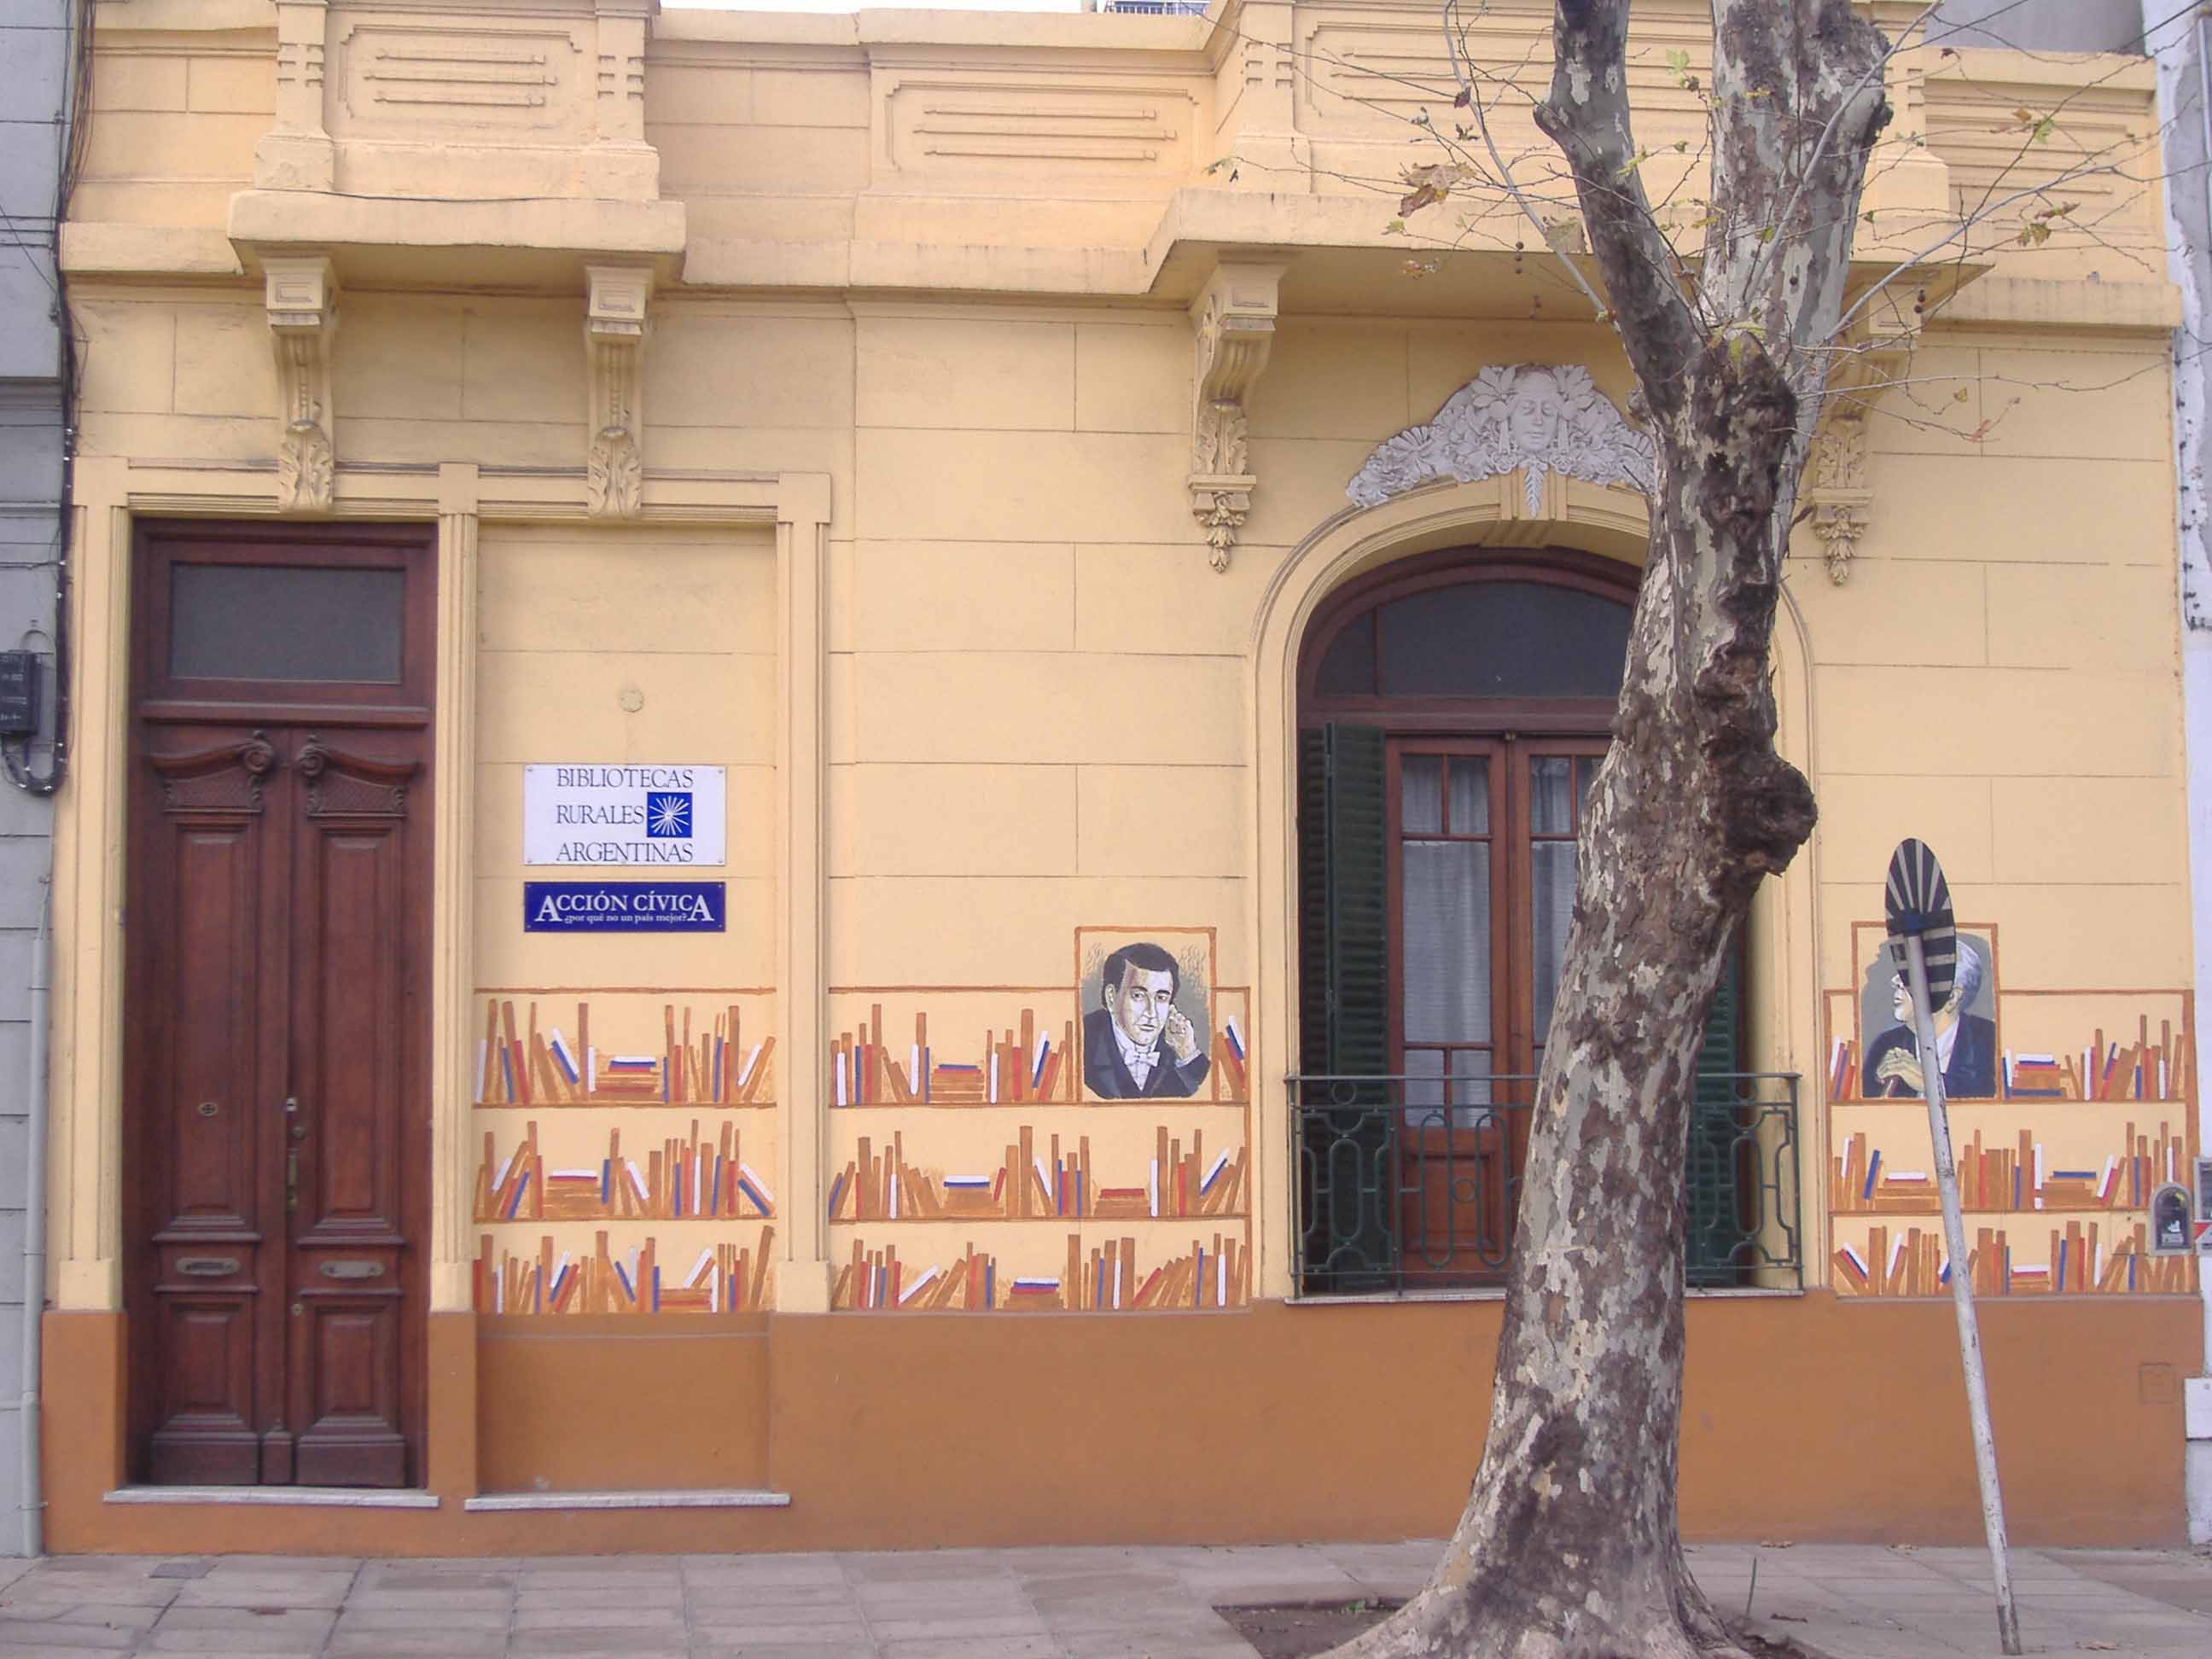 Bibliotecas Rurales Argentinas obtuvo desde sus inicios hasta la actualidad diversos reconocimientos.